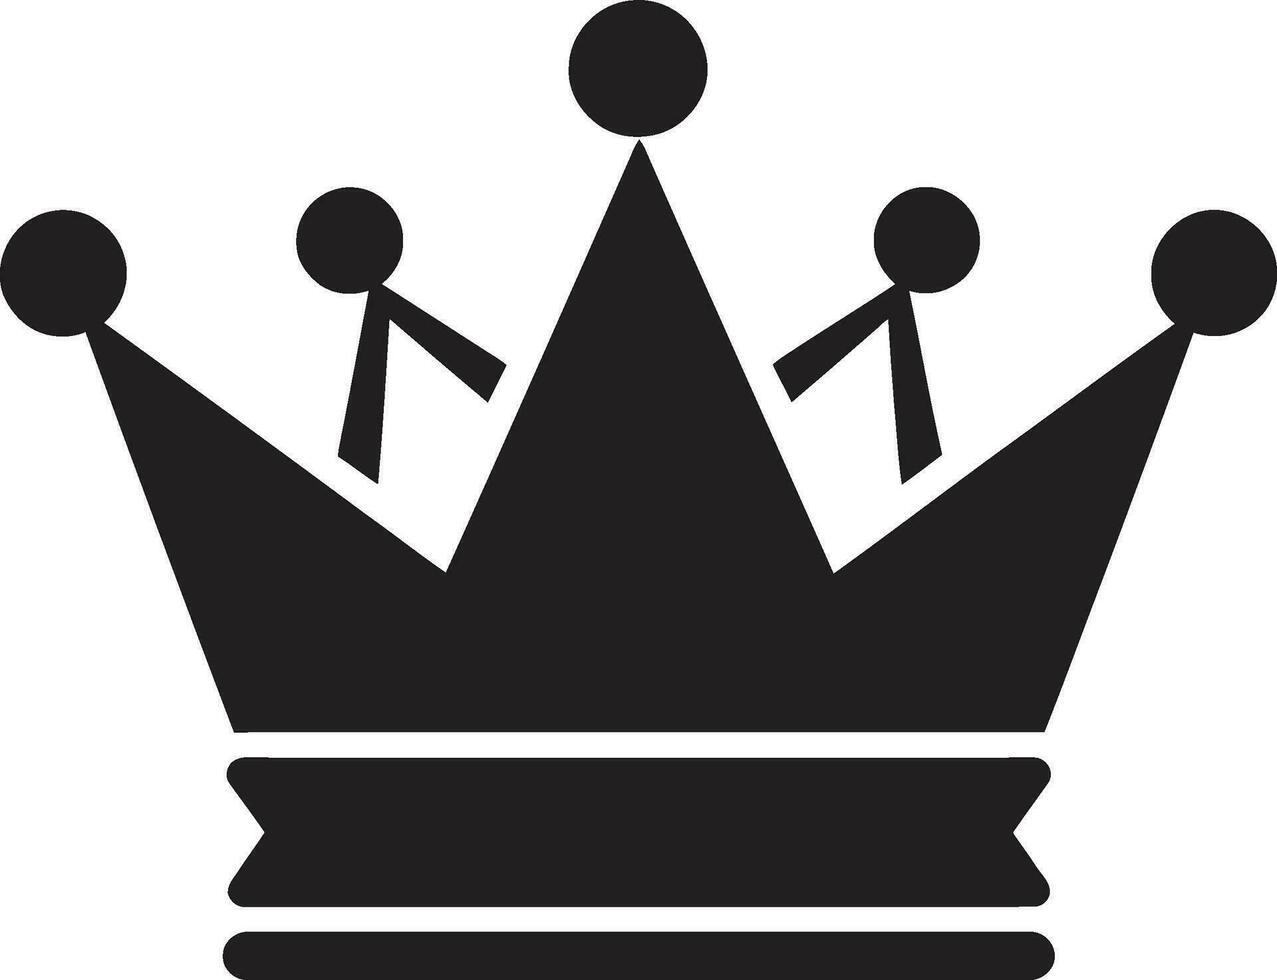 Eleganz im schwarz Krone Emblem Vektor Kunst vergrößert Krone im schwarz